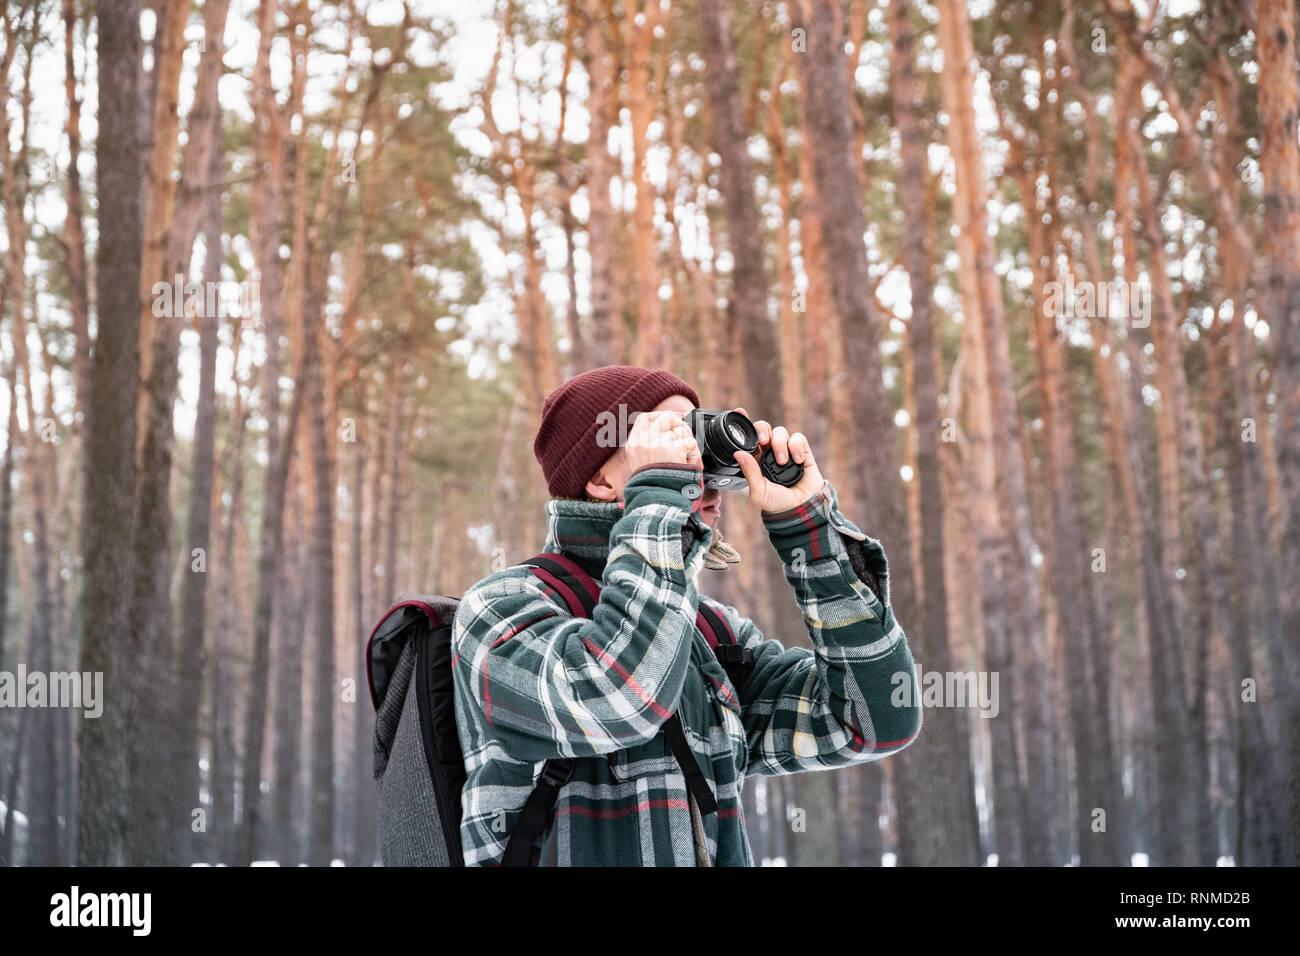 Wandern männliche Person im Winter Wald Foto nehmen. Mann in karierten winter Shirt im schönen schneebedeckten Wäldern verwendet alte Filmkamera Stockfoto